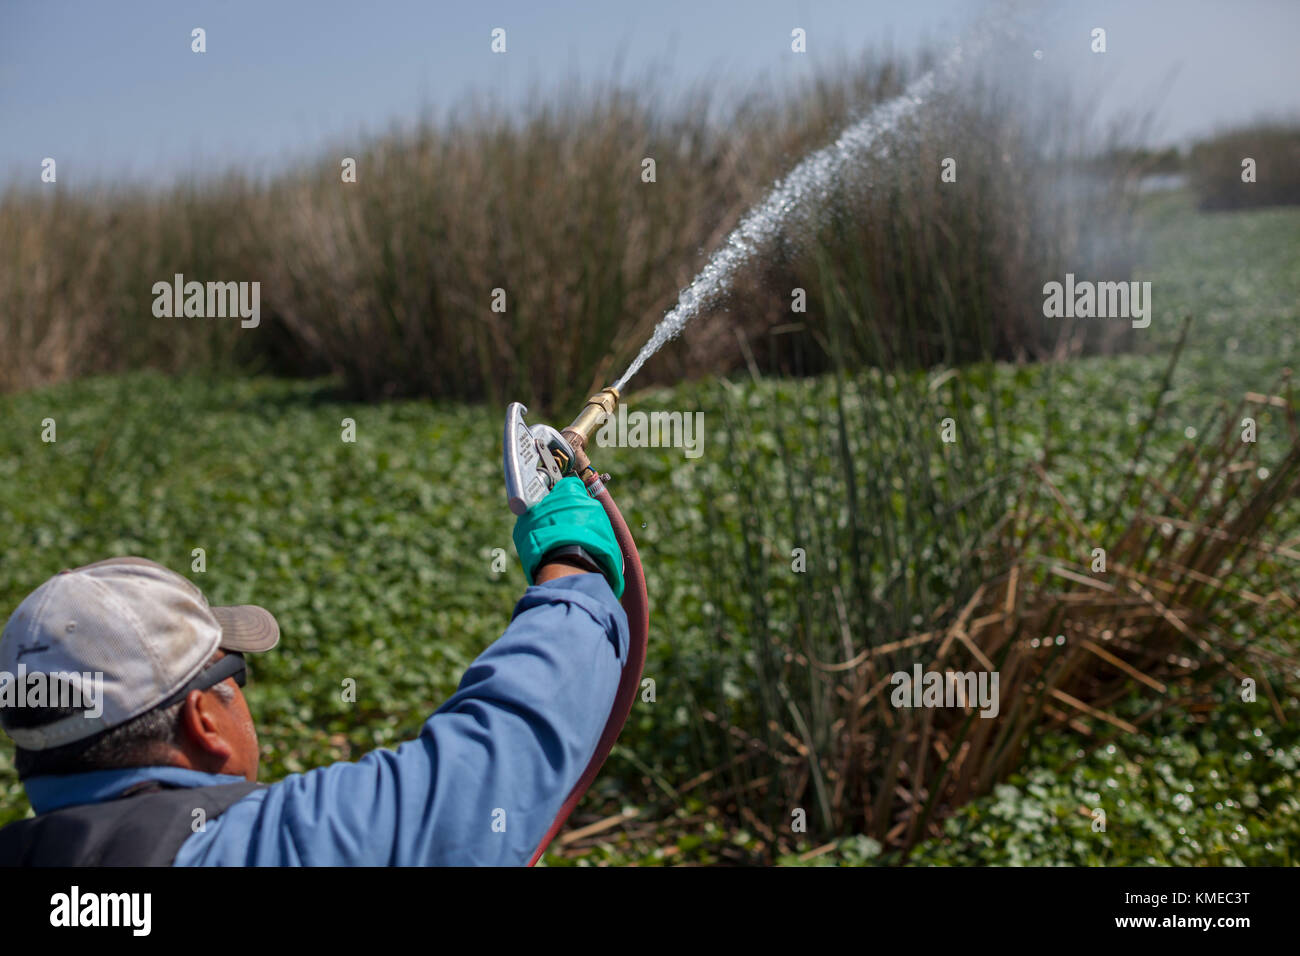 L'uomo la spruzzatura di giacinto di acqua con sostanze chimiche, Stockton, California, Stati Uniti d'America Foto Stock